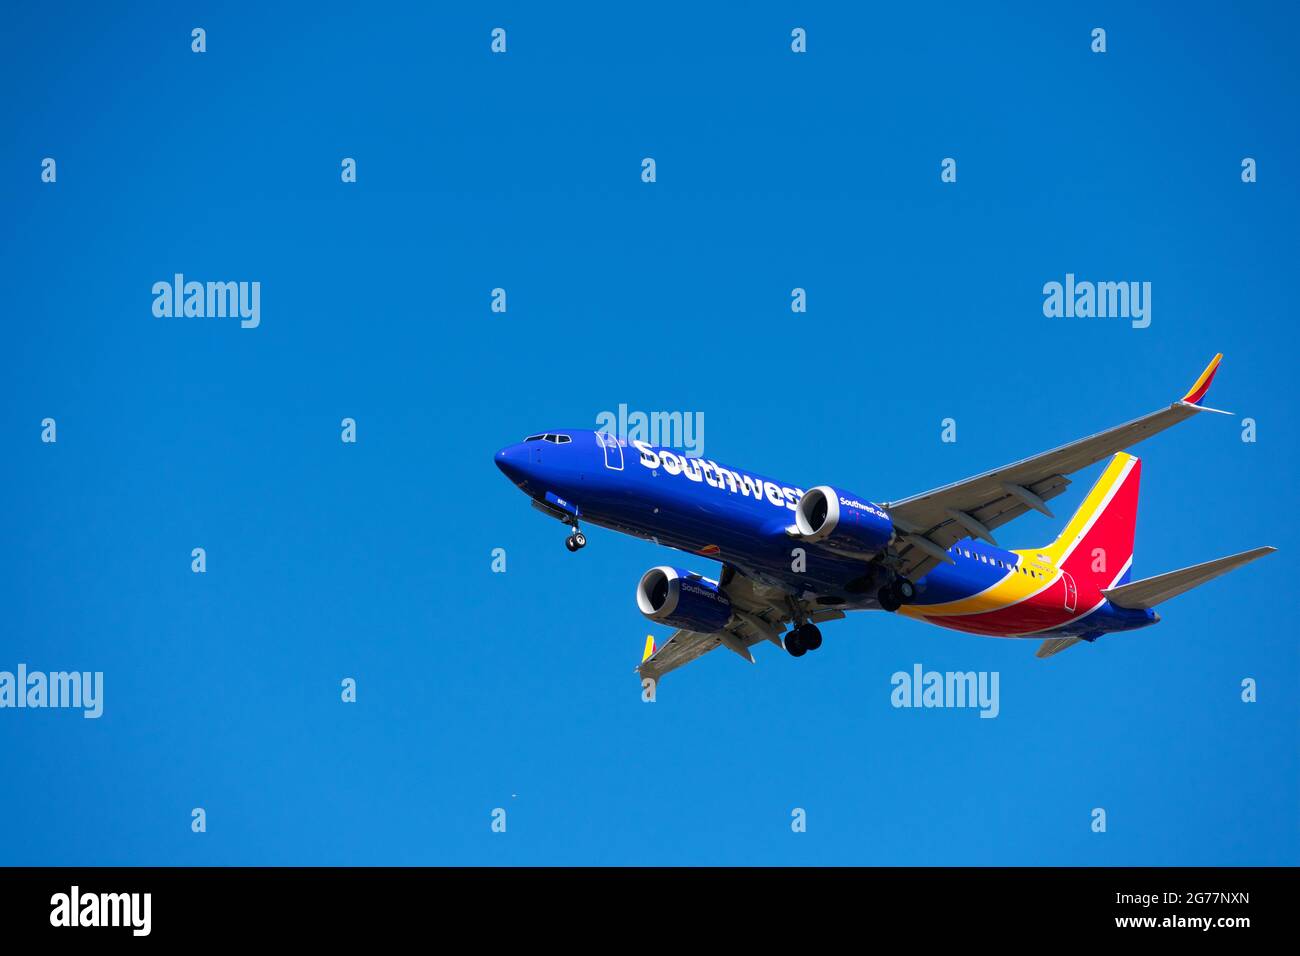 Le Boeing 737 MAX 8 exploité par Southwest Airlines se prépare à atterrir à l'aéroport avec des trains d'atterrissage déployés. Ciel bleu - San Jose, Cali Banque D'Images